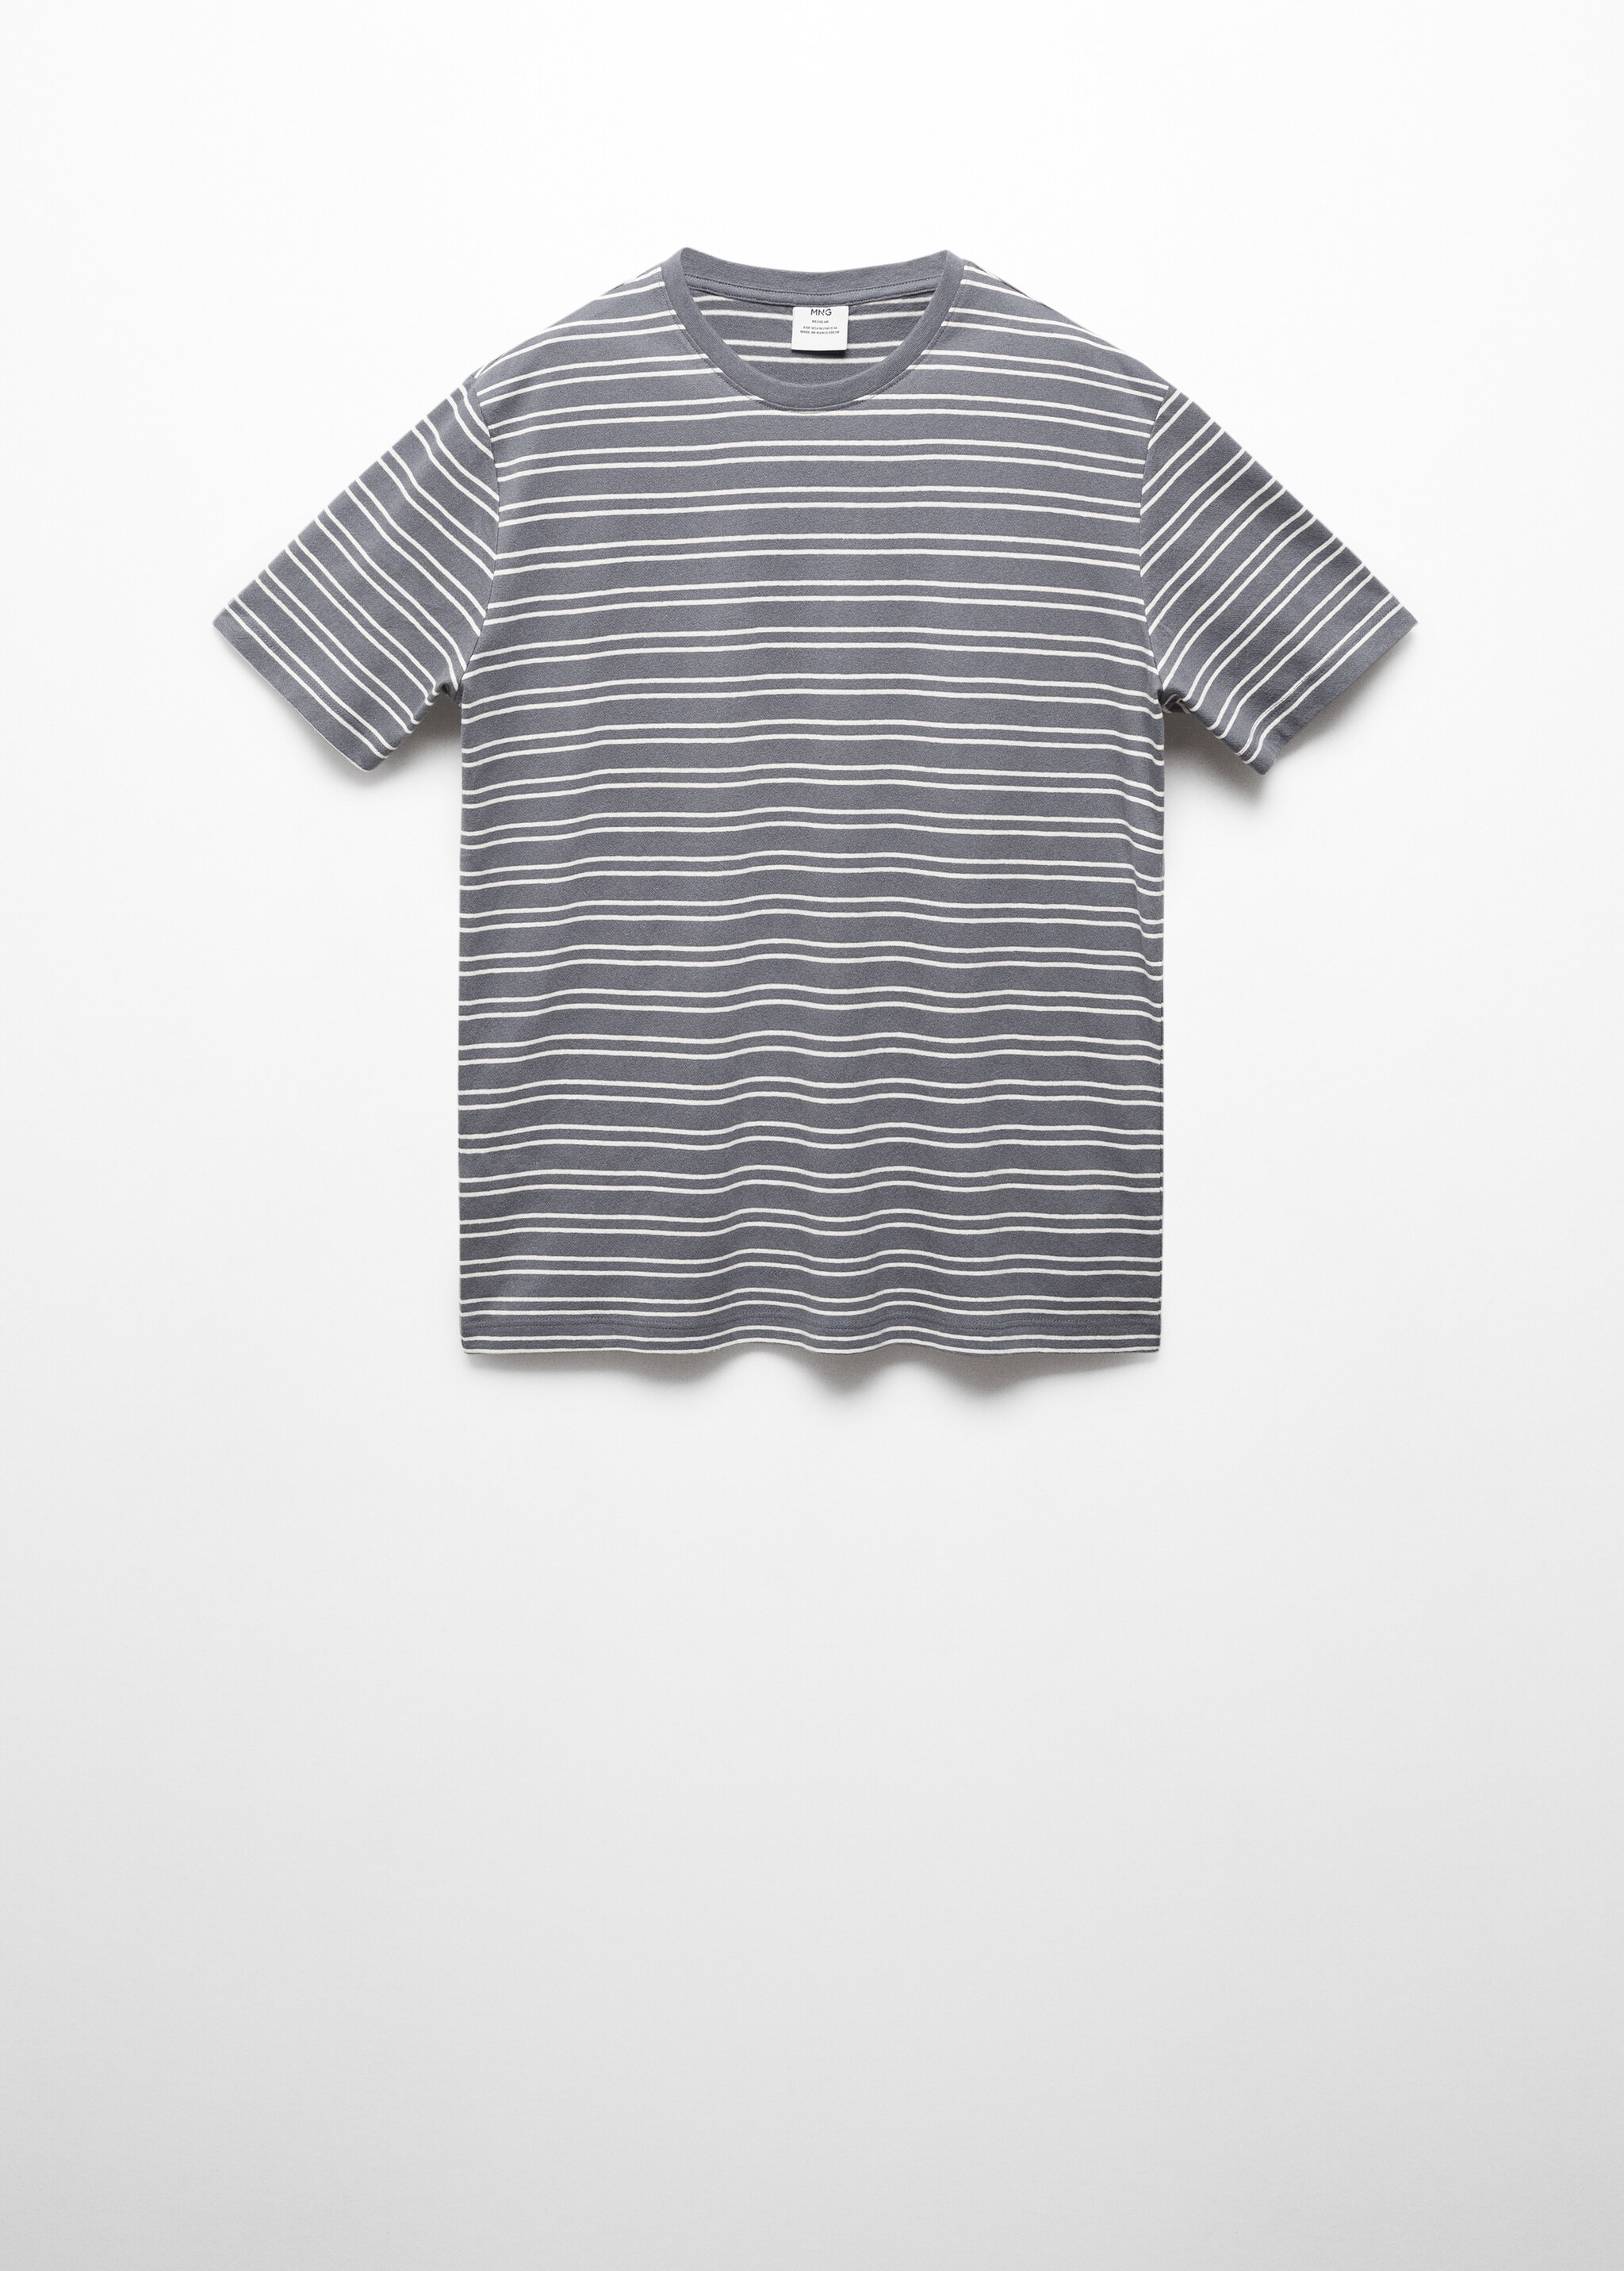 Camiseta algodón lino rayas - Artículo sin modelo